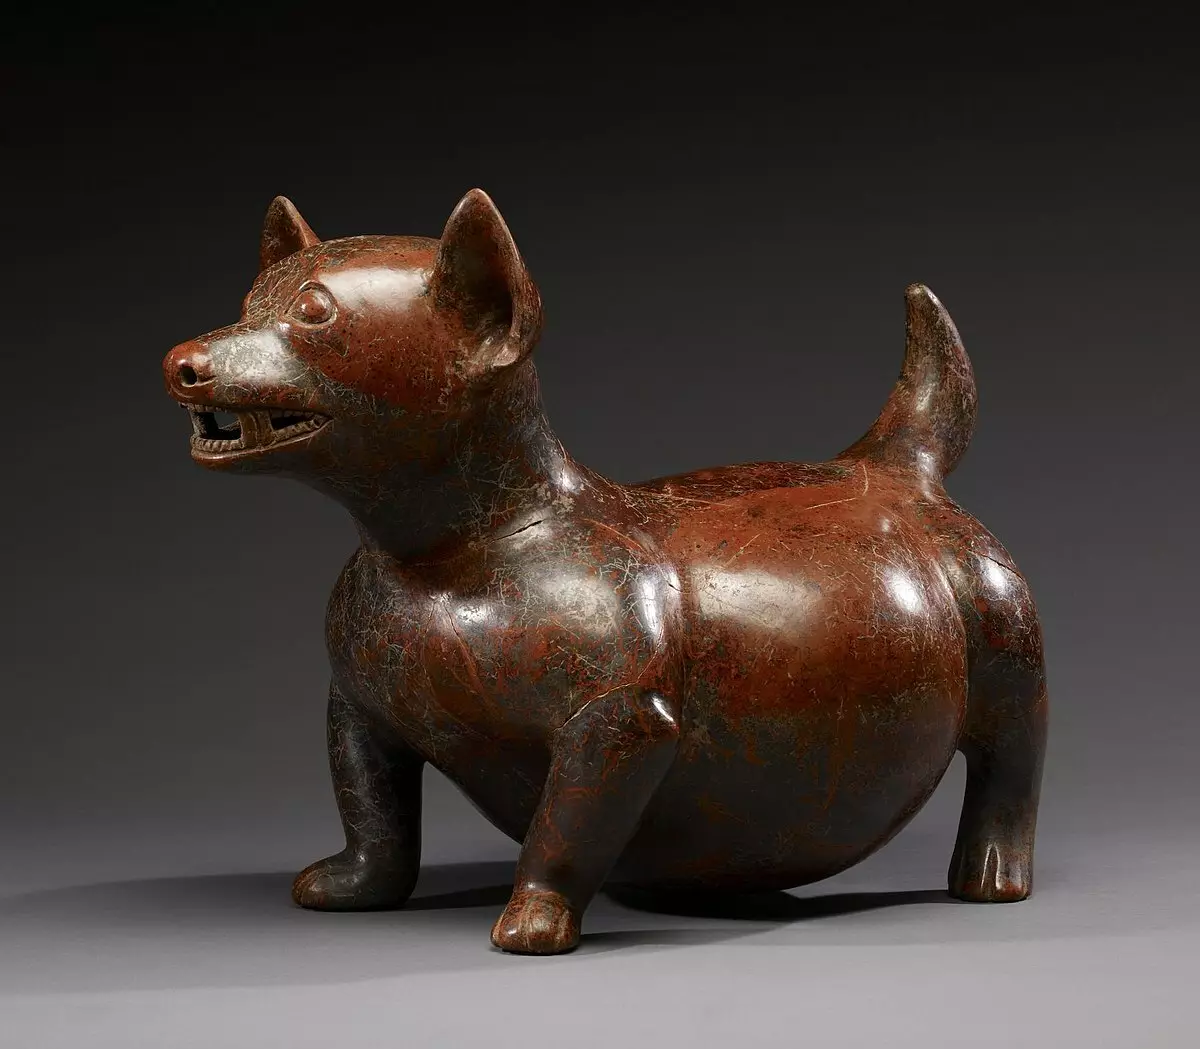 Čihuahua veislės istorija: kurioje šalyje šuo pirmą kartą pasirodo? Kas jie kilo? 22881_13